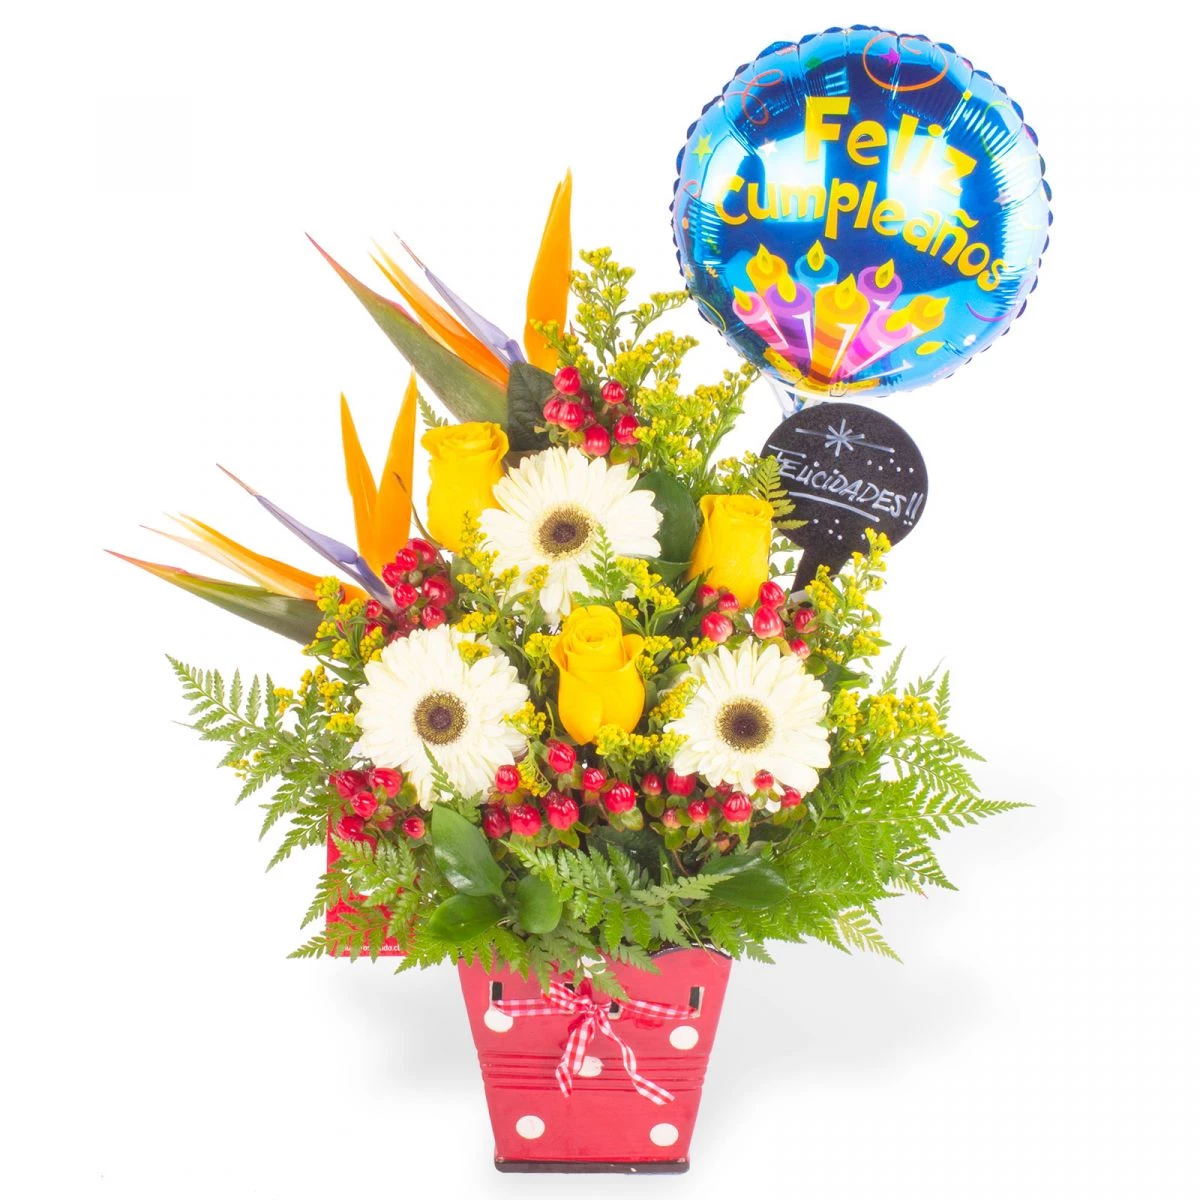 Foto principal Cumpleaños Mágico Rosas Amarillas - Arreglo floral de cumpleaños con globo, pizarra, rosas amarillas, gerberas y aves del paraíso